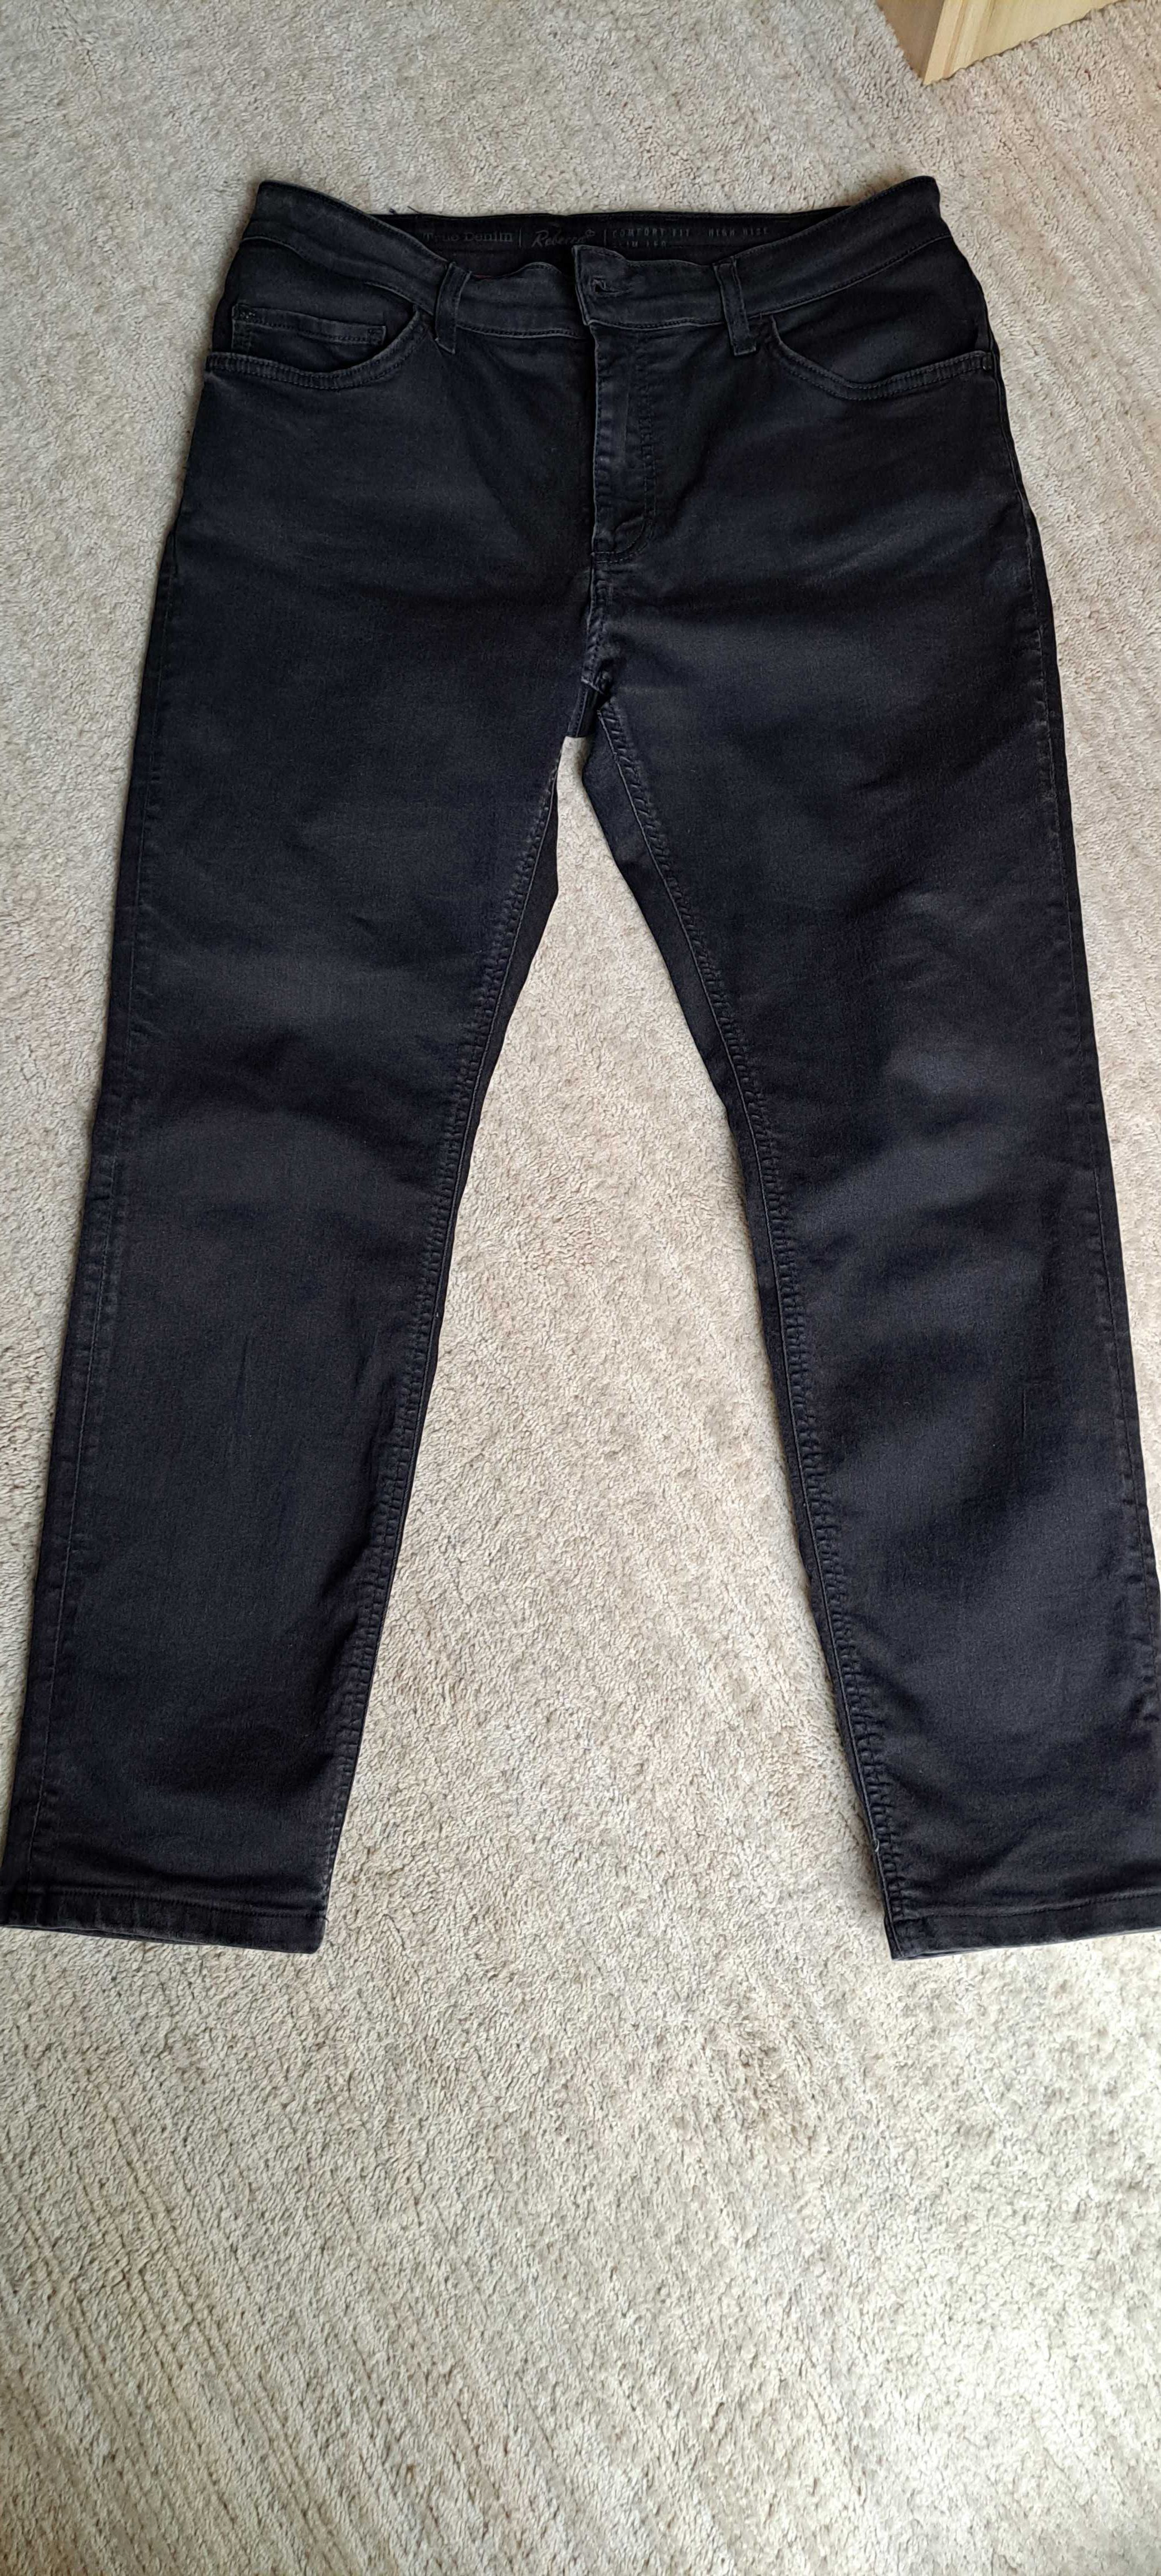 MUSTANG REBECCA spodnie damskie, jeans, rozmiar 33/30, czarne